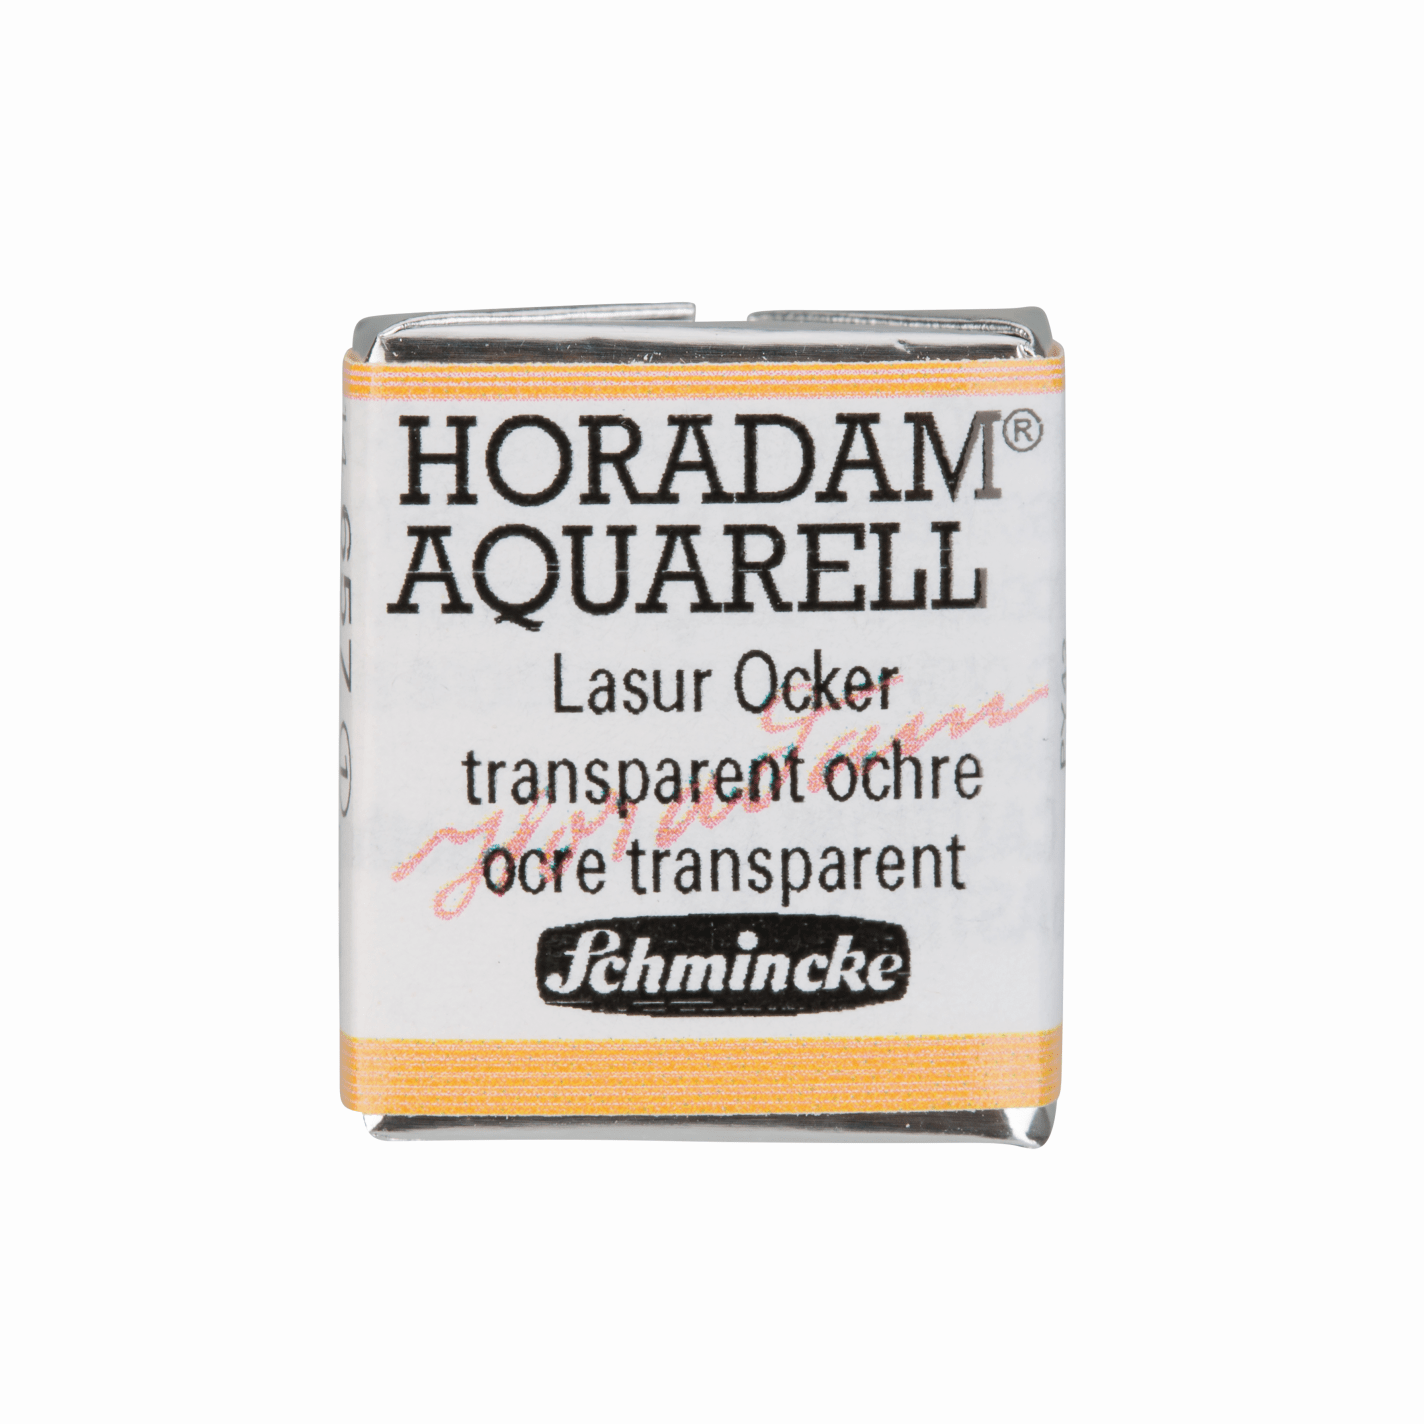 Schmincke Horadam Aquarell pans 1/2 pan Transparent Ochre